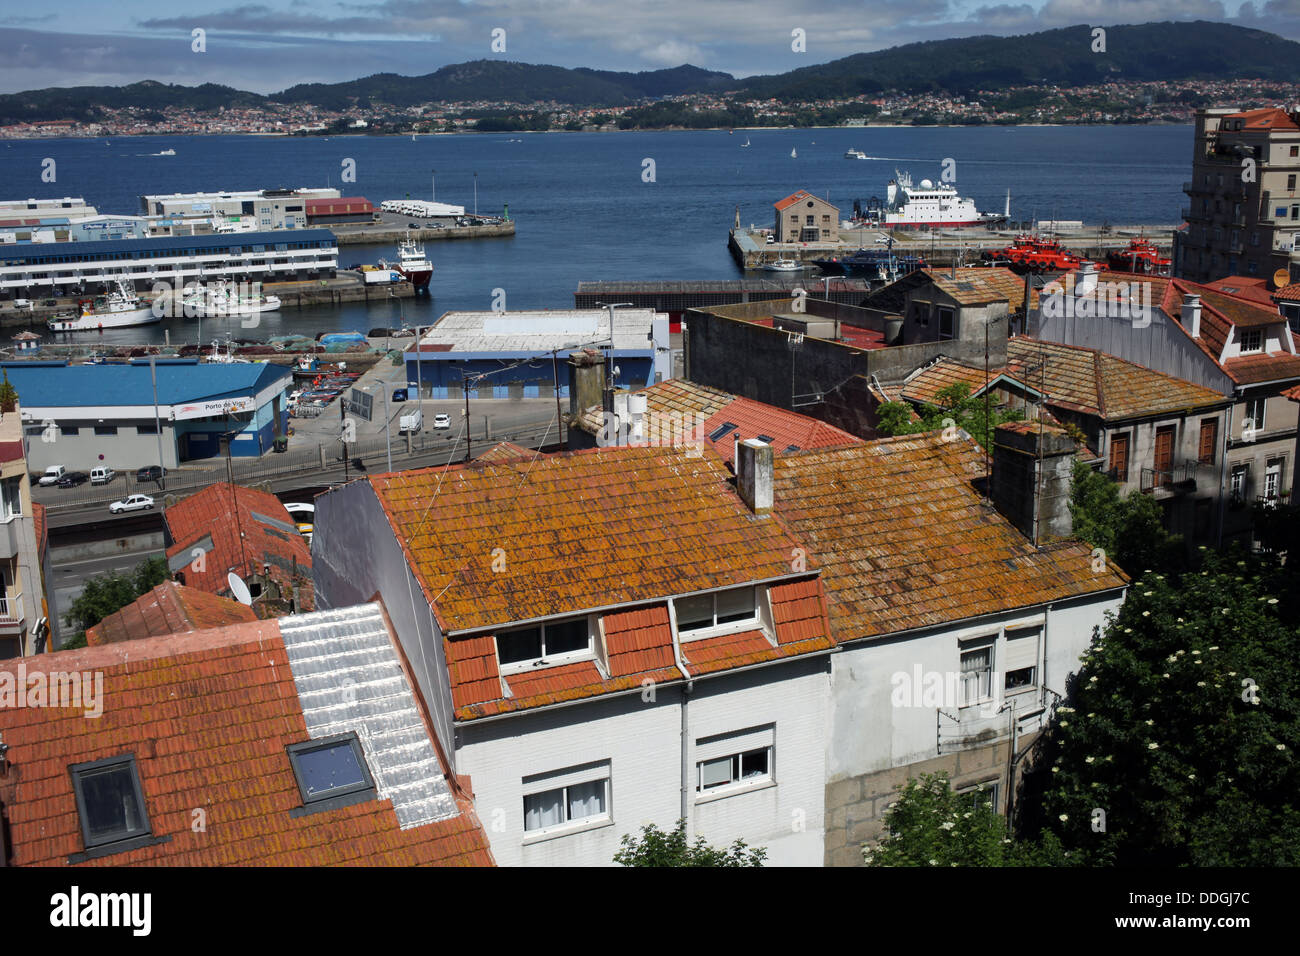 View of the Port of Vigo and Ria de Vigo - Paseo de Alfonso XII - Vigo - Pontevedra - Galicia - Spain Stock Photo